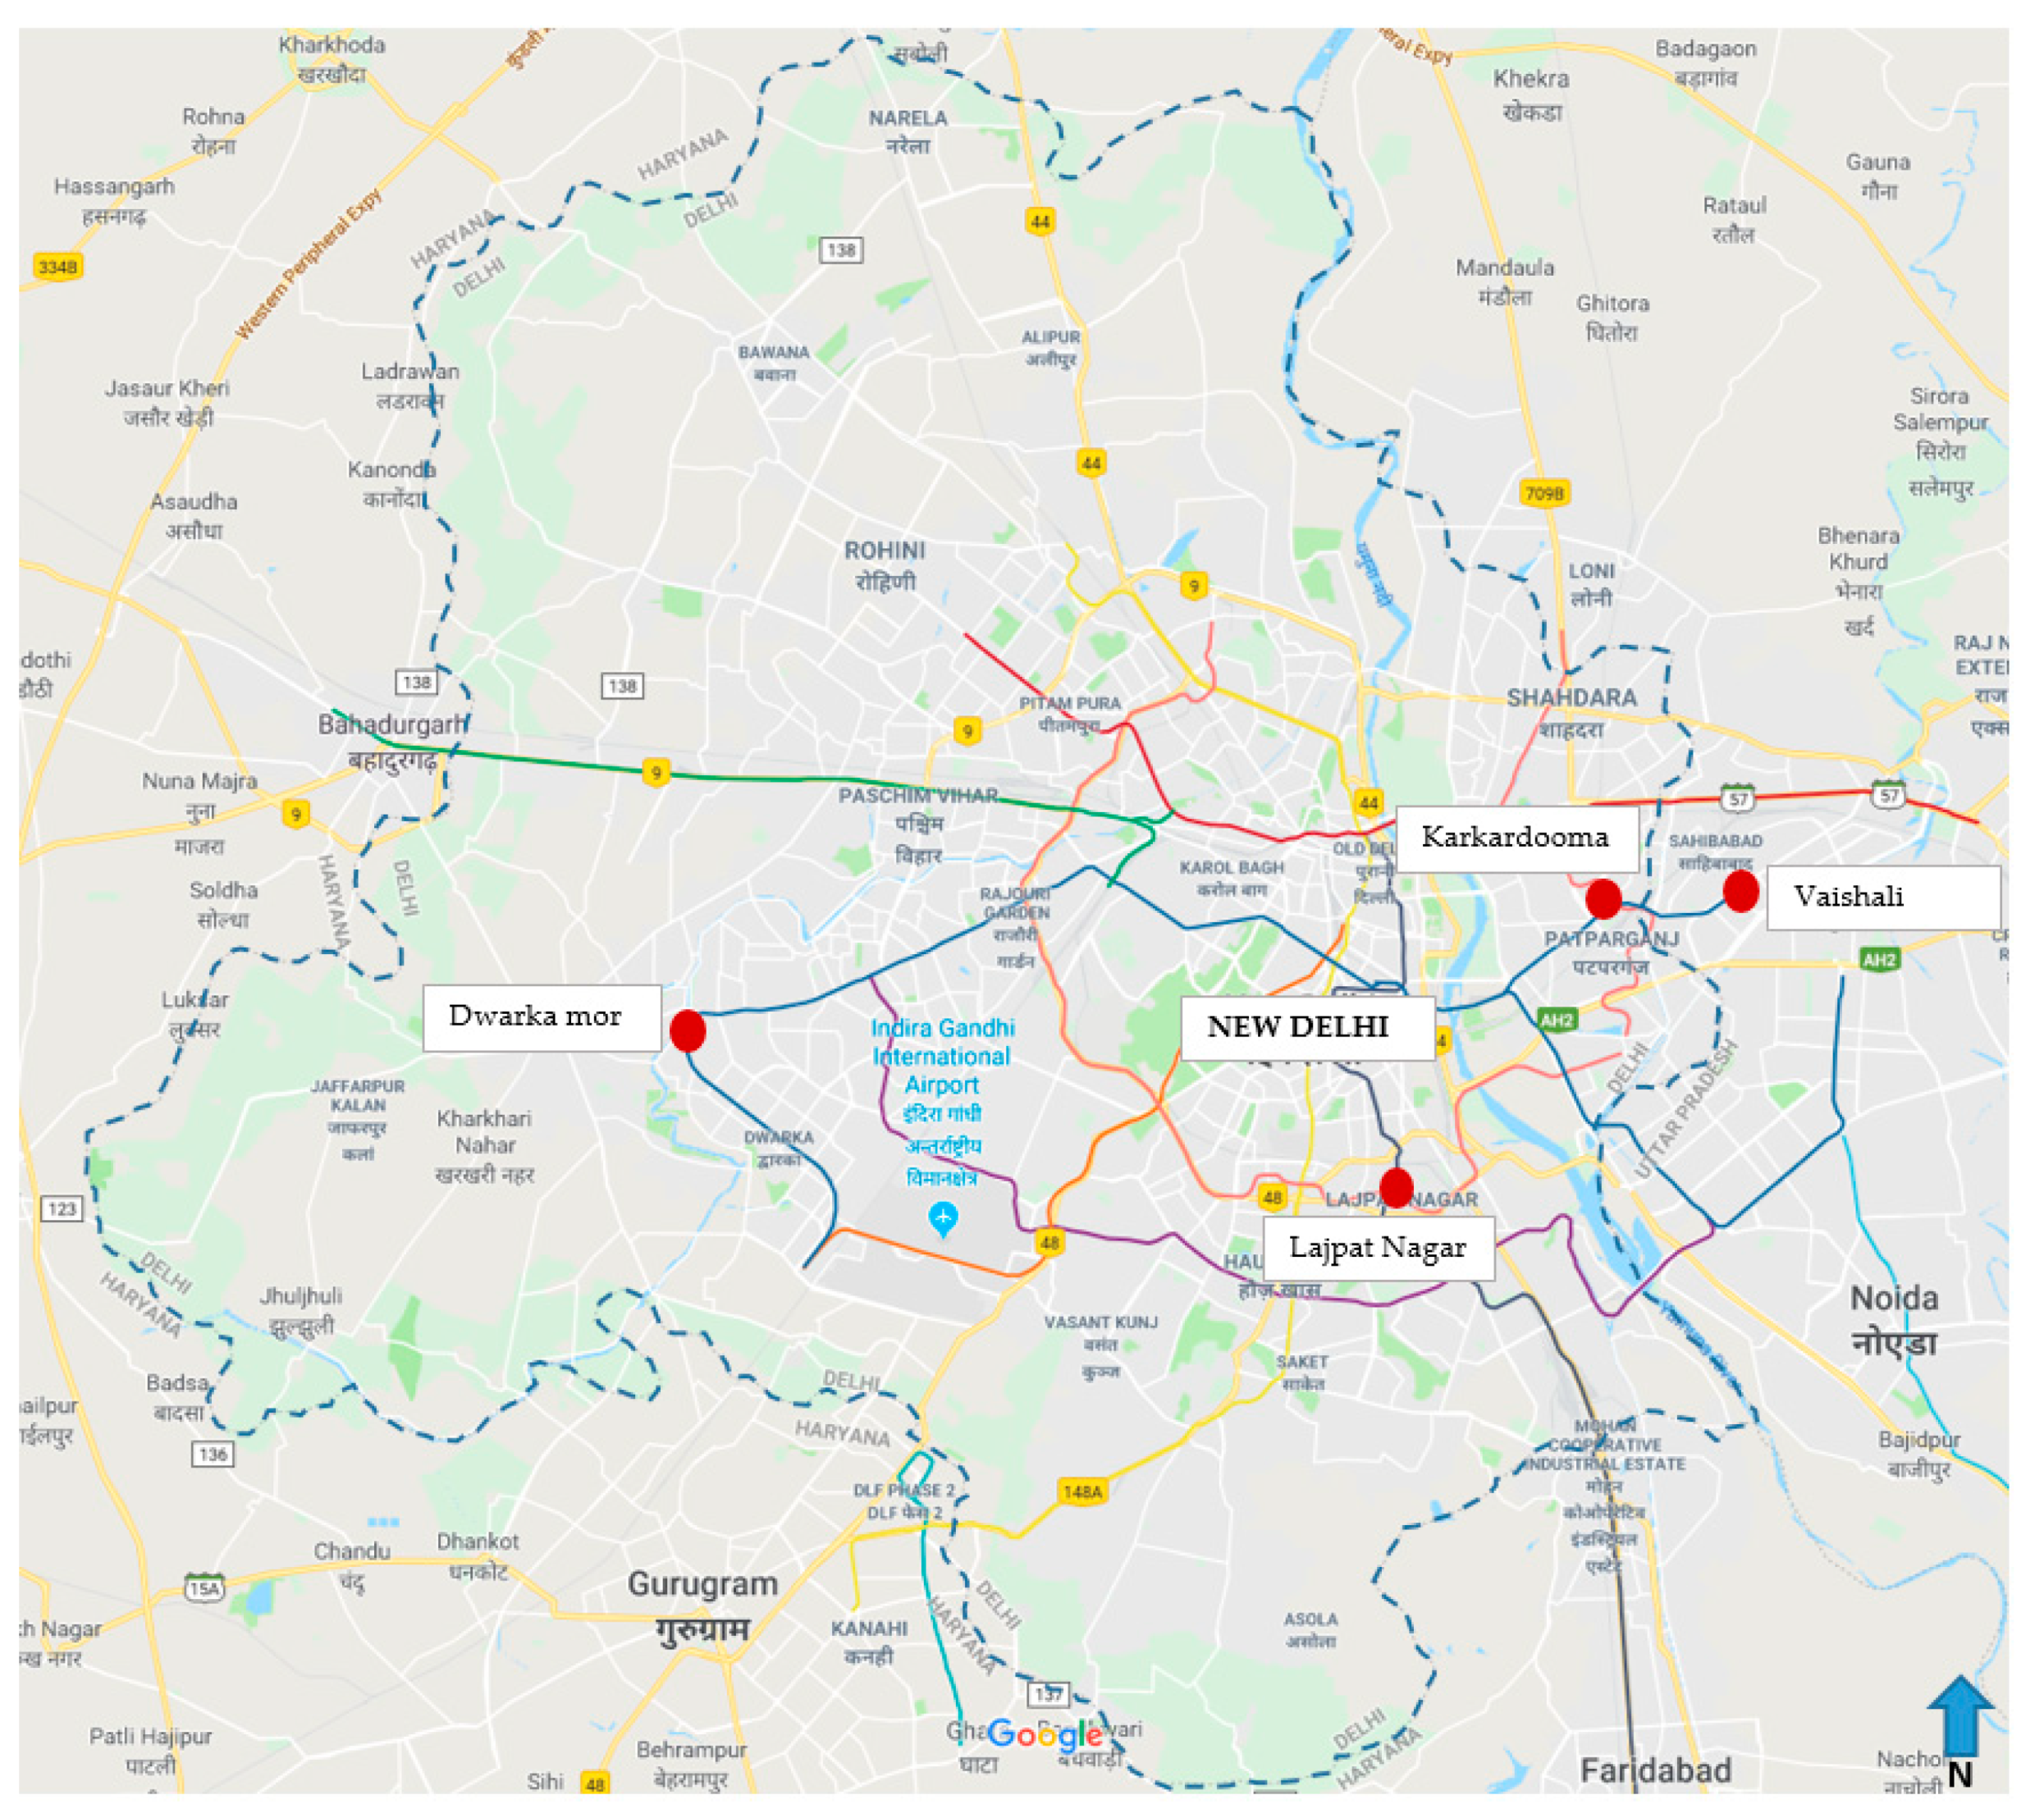 Urban Floods: Case Study of Bangalore